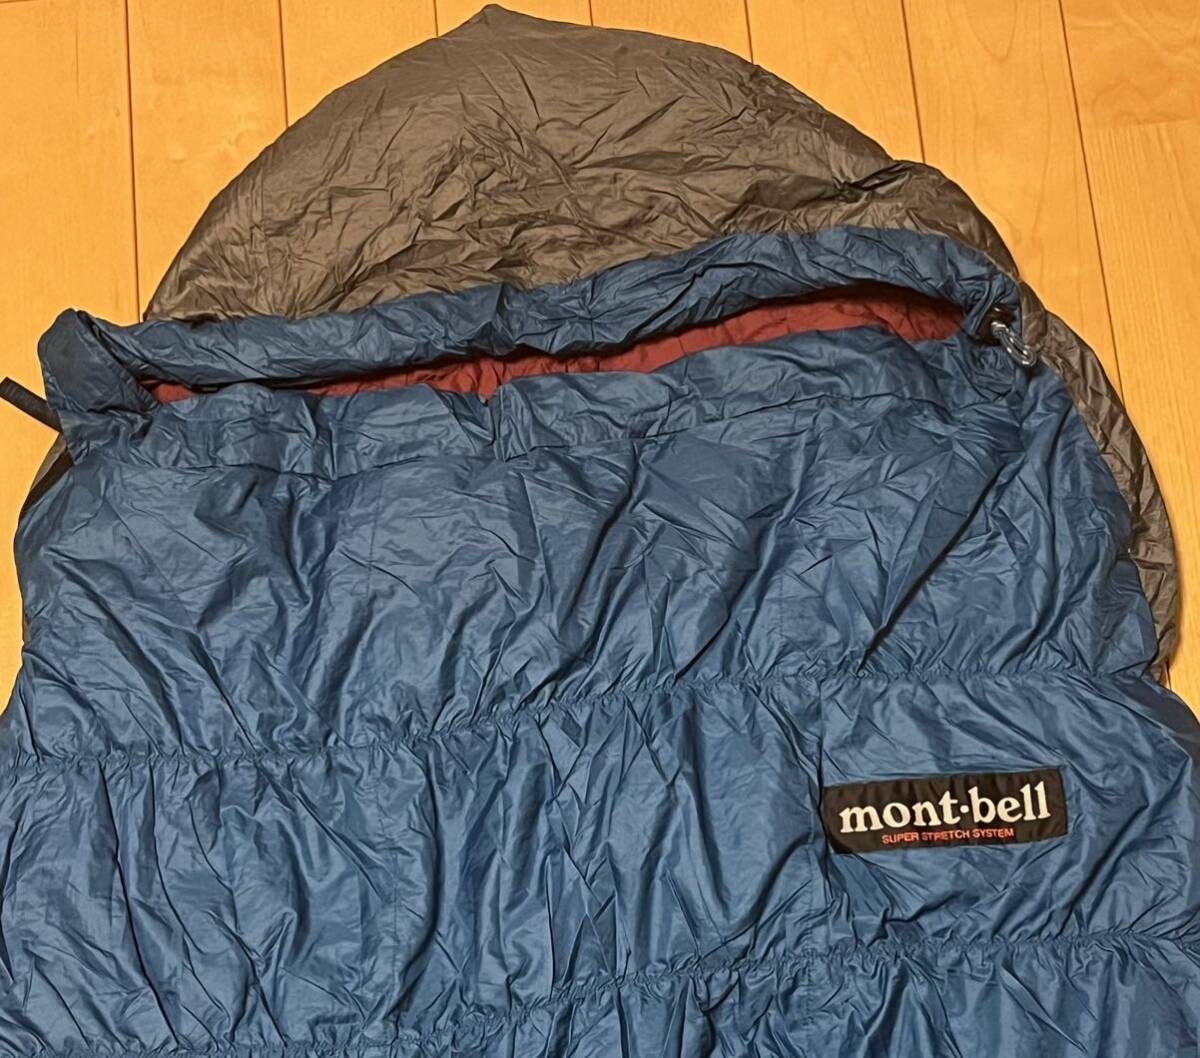  Mont Bell (mont-bell) super стрейч down Hugger спальный мешок #4 спальный мешок 